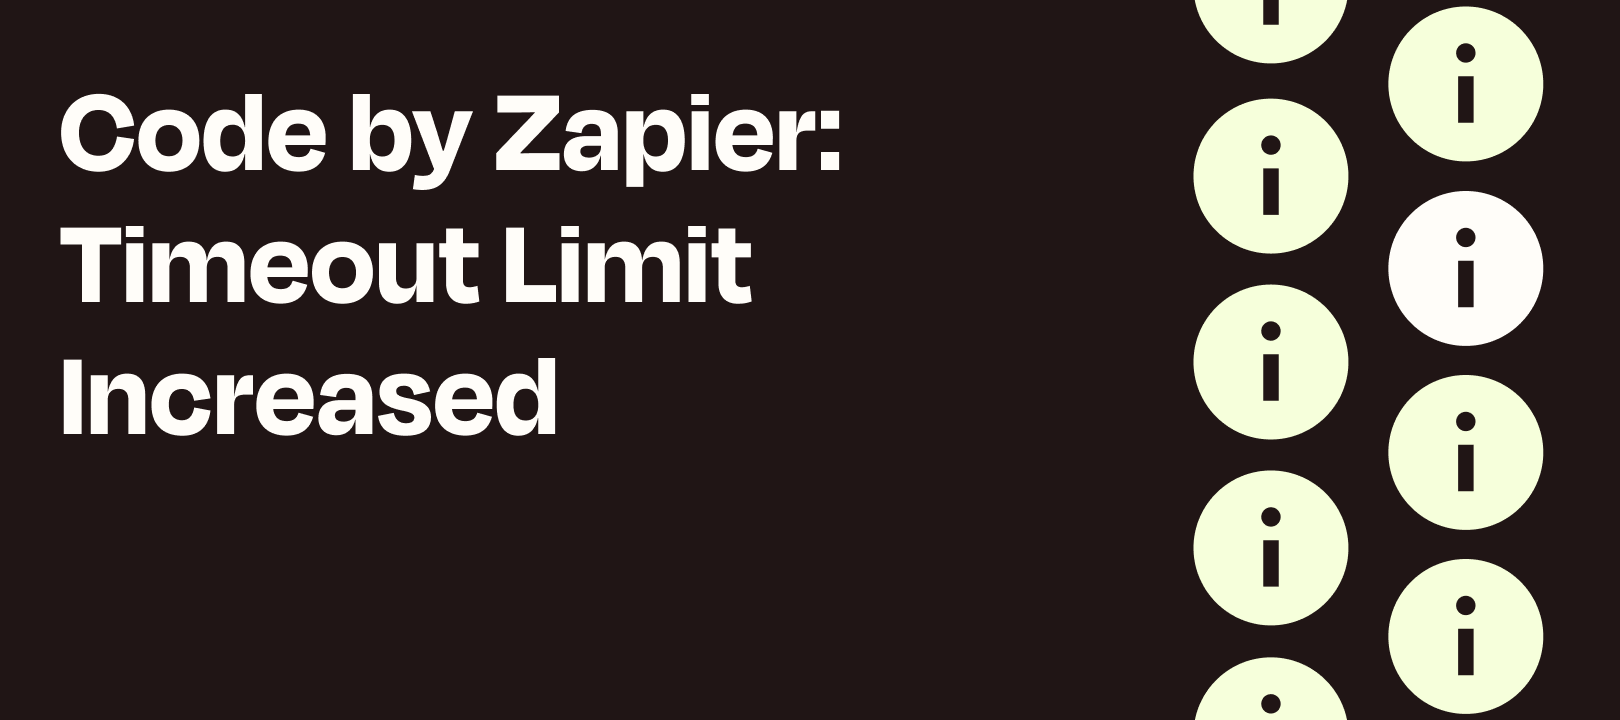 Code by Zapier Run-Time Increase